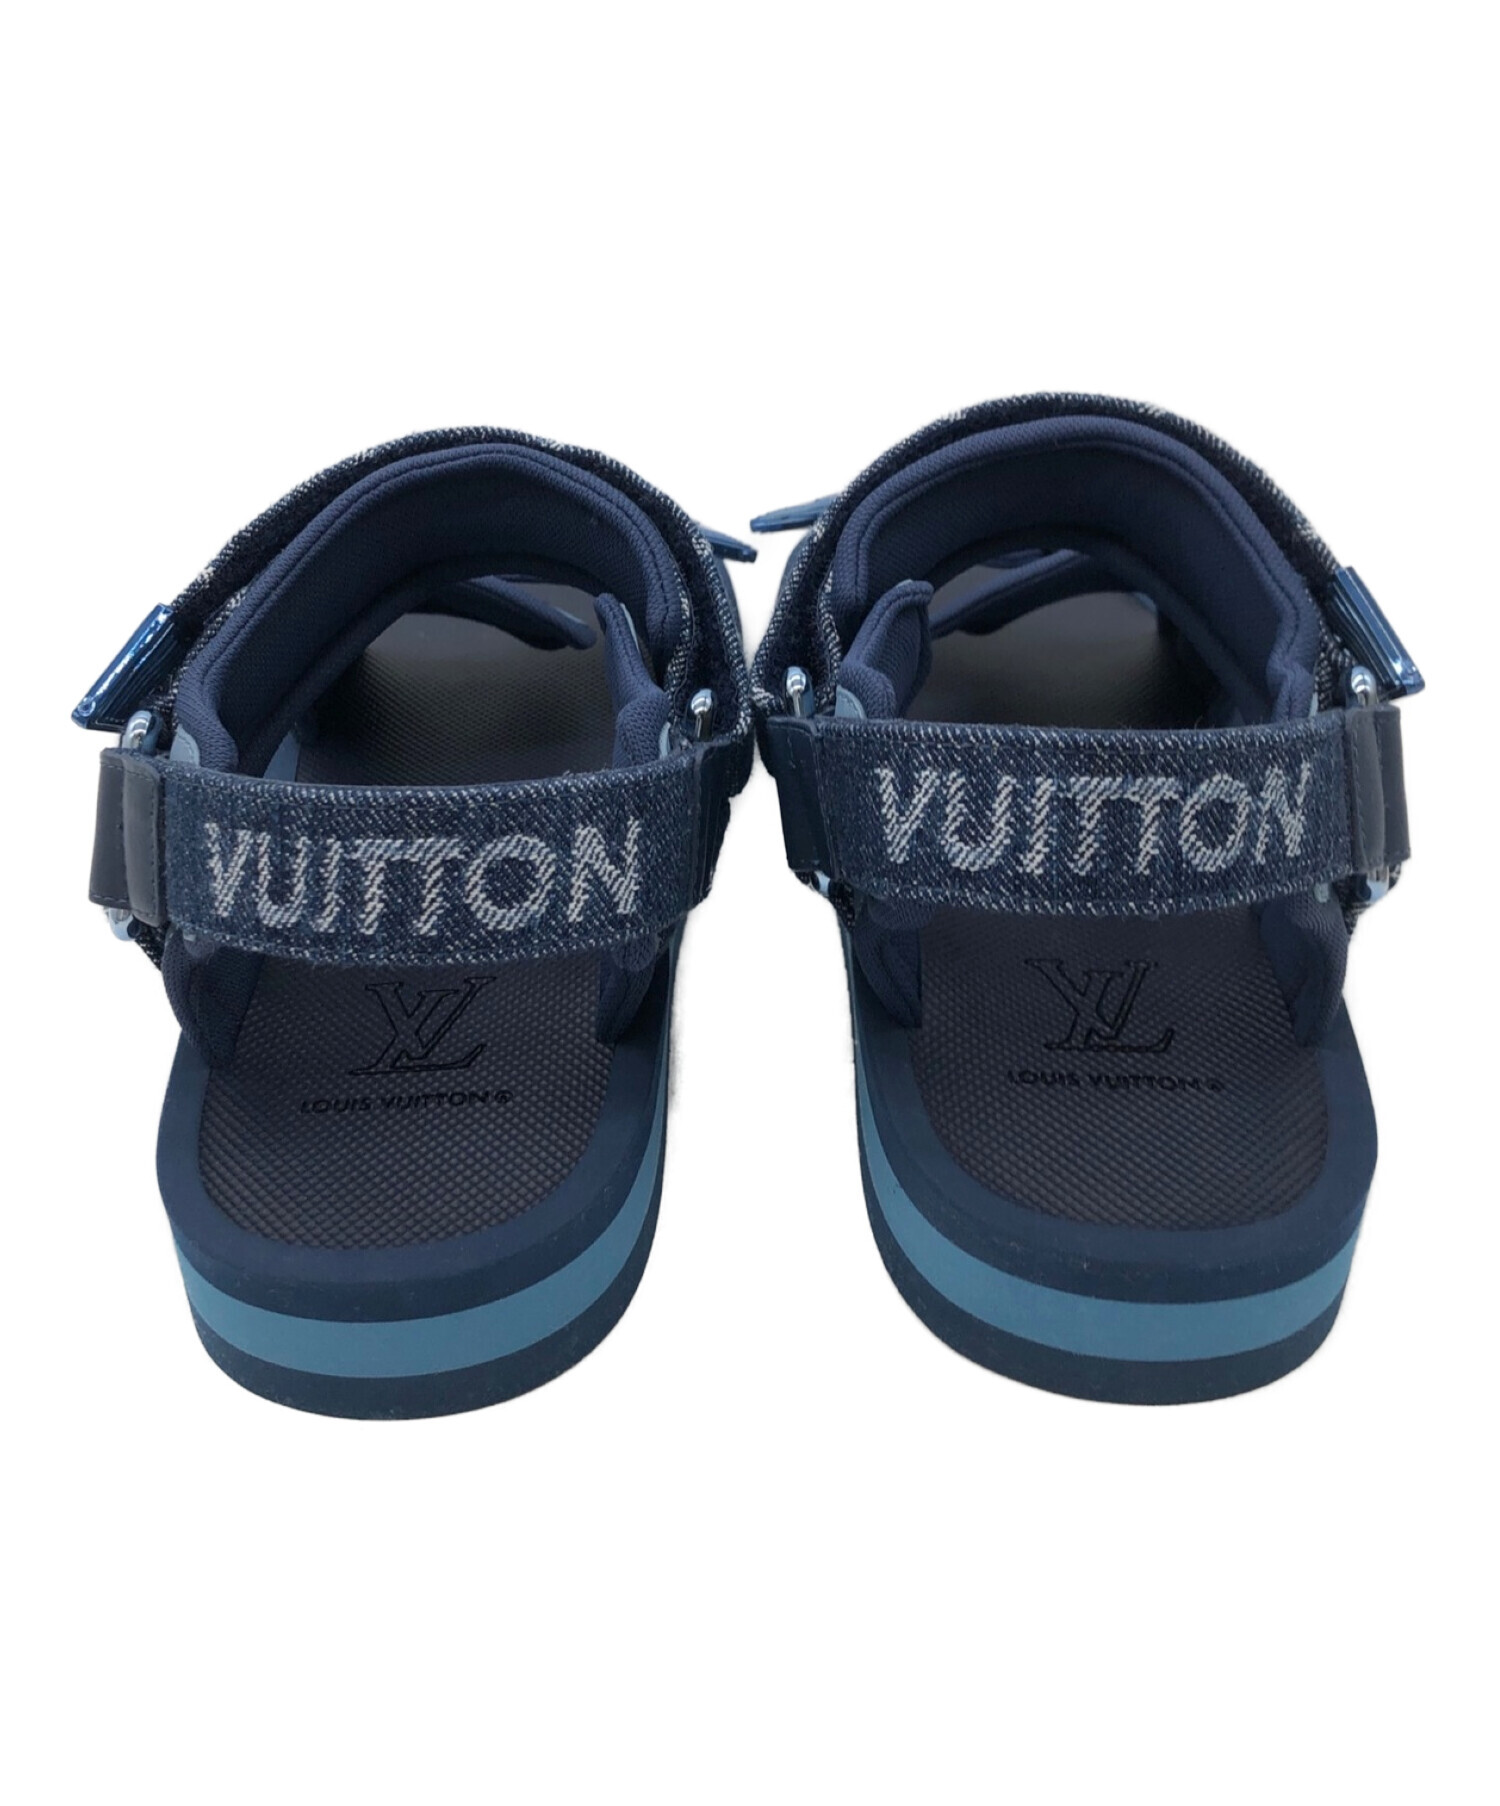 Louis Vuitton ルイヴィトン サンダル サイズ6 ユニセックス - サンダル